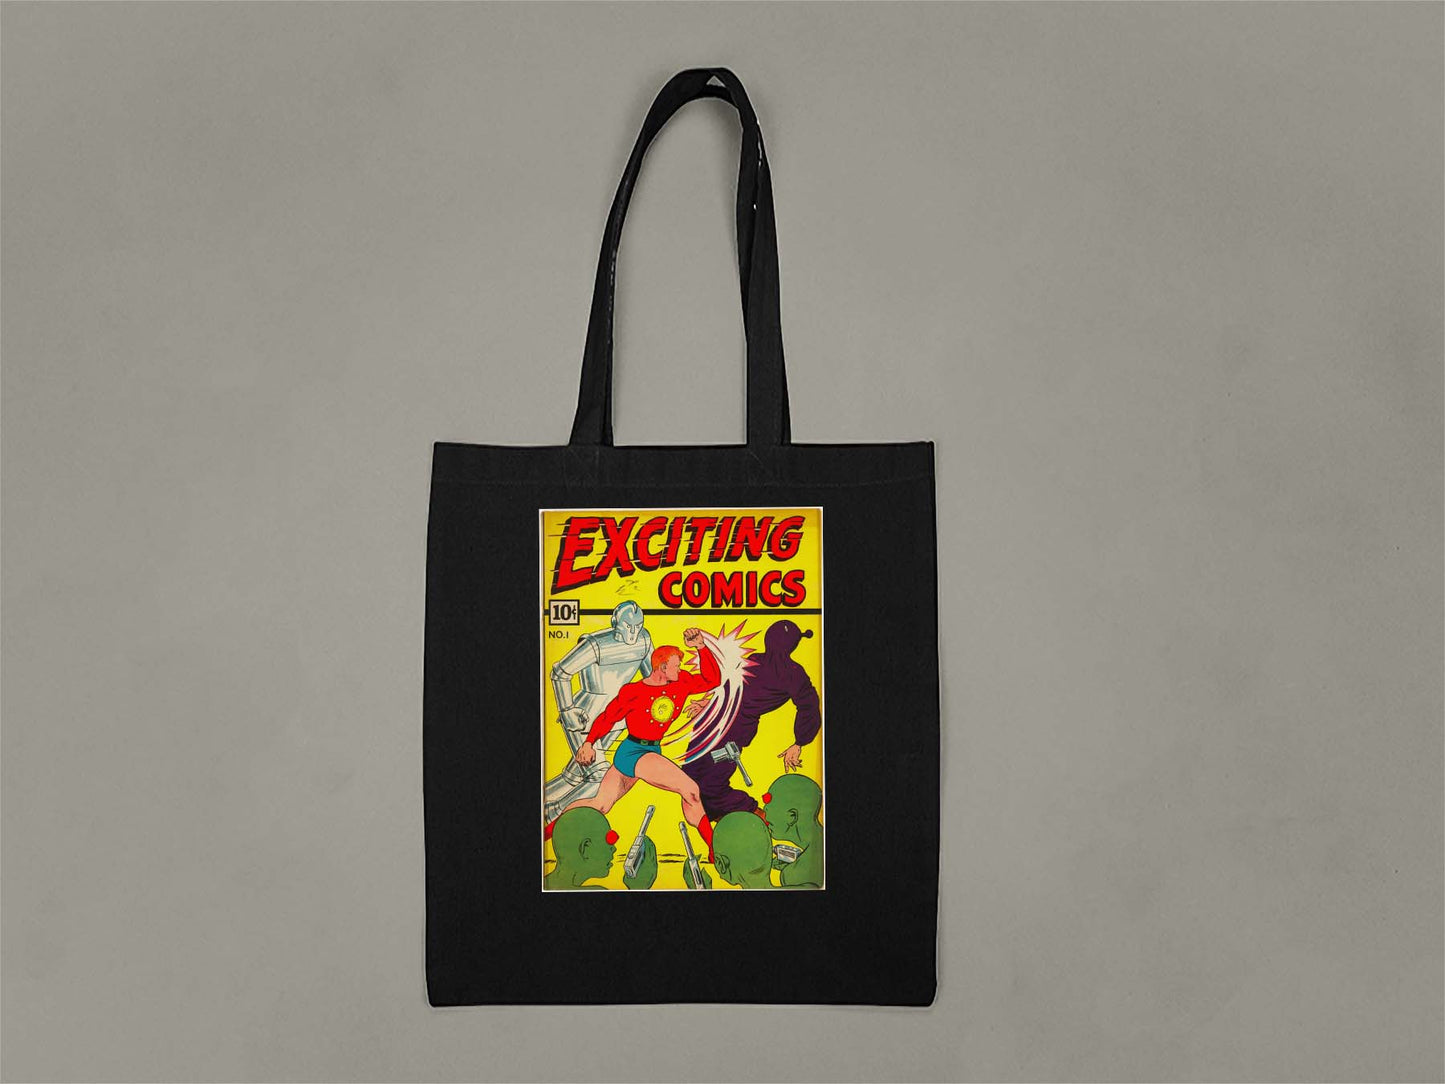 Exciting Comics No.1 Tote Bag  Black